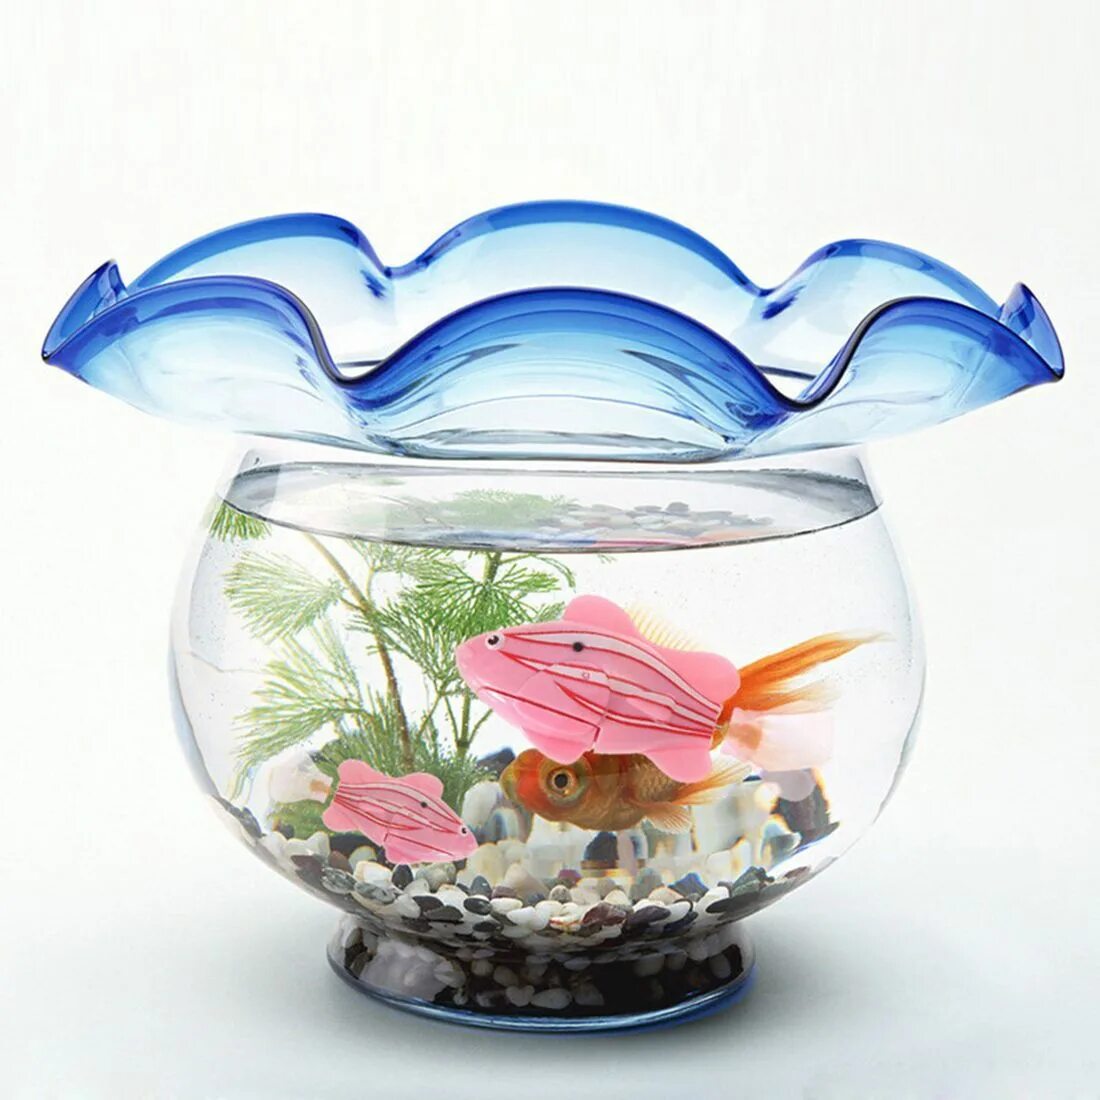 Купить живых аквариумных рыбок. Аквариум Gold Fish Bowl 17л оранжевый. Рыба в круглом аквариуме. Золотая рыбка в аквариуме. Круглый аквариум с рыбками.